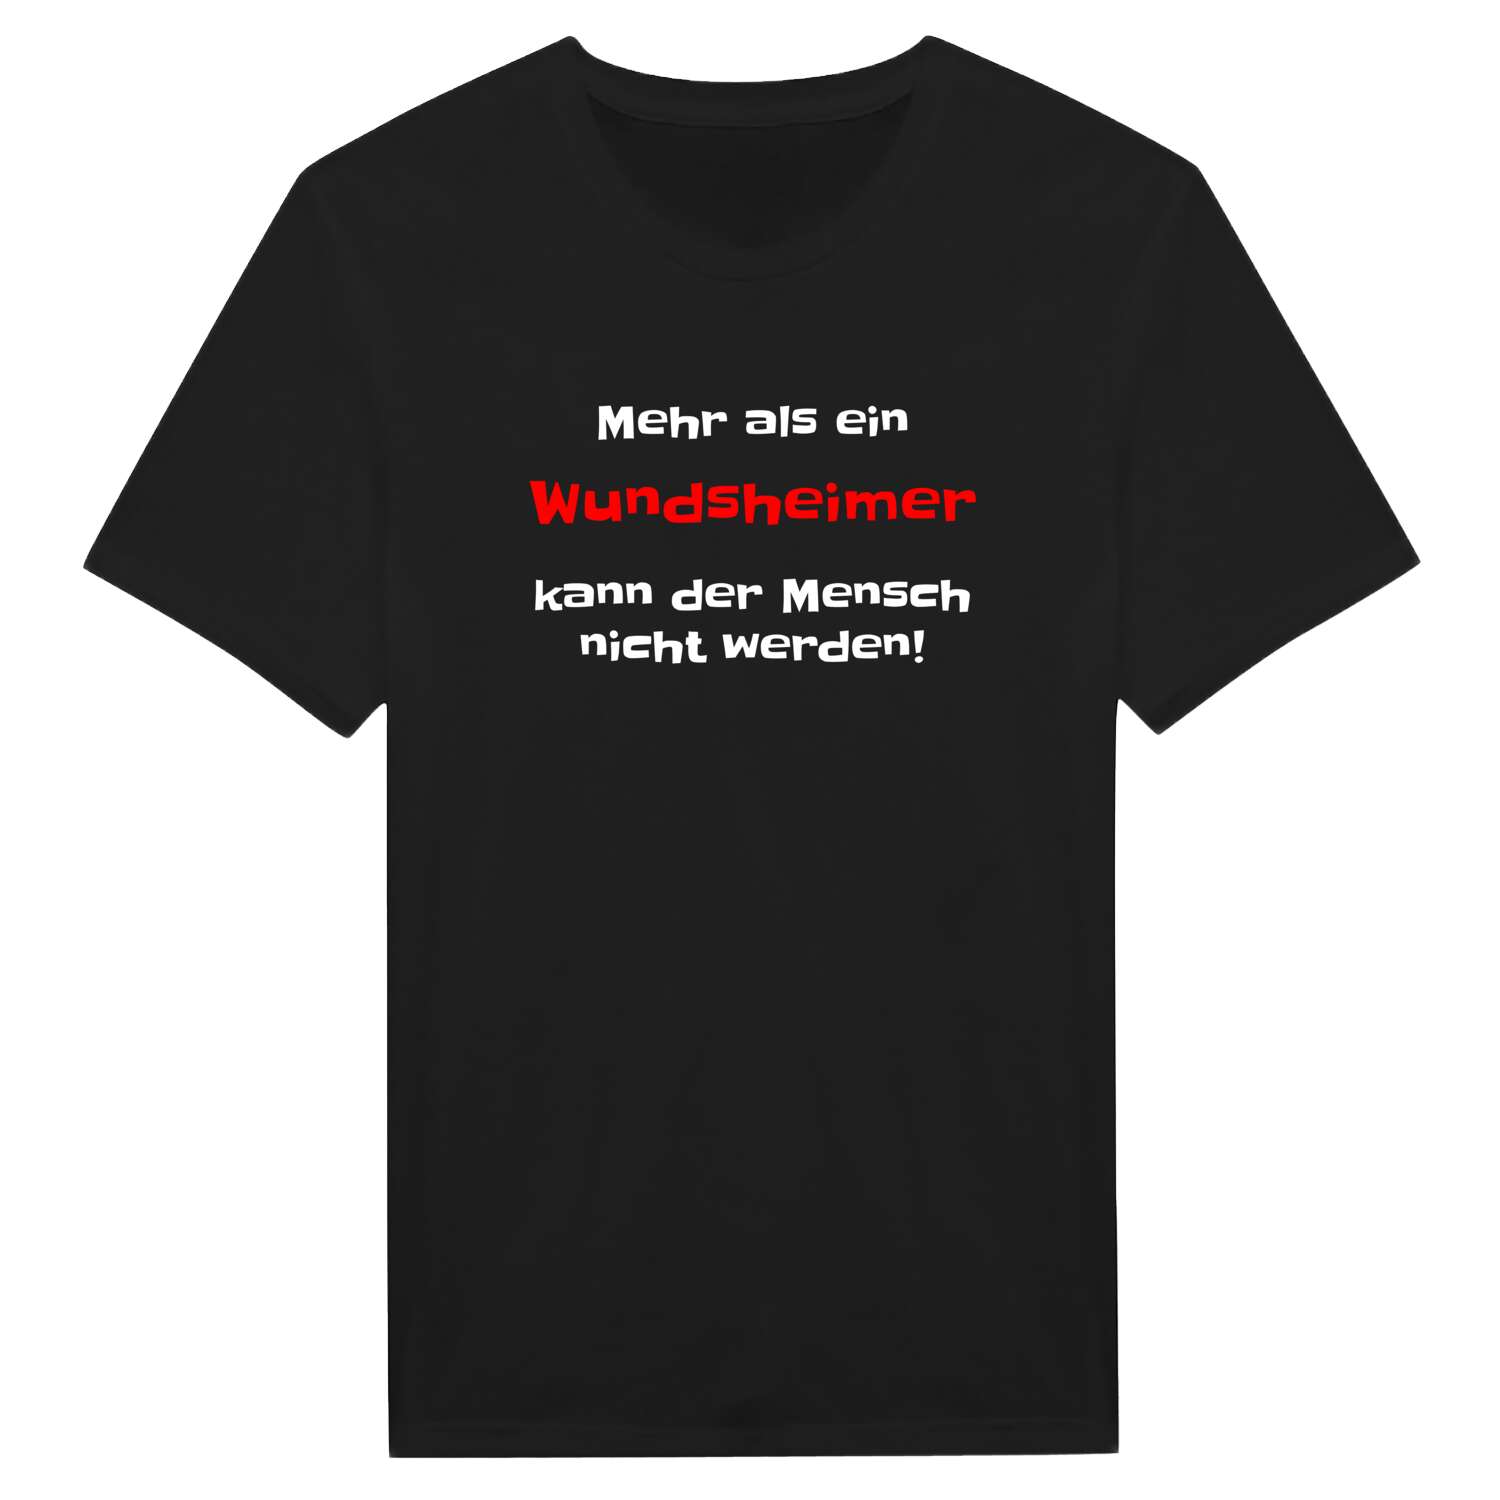 Wundsheim T-Shirt »Mehr als ein«